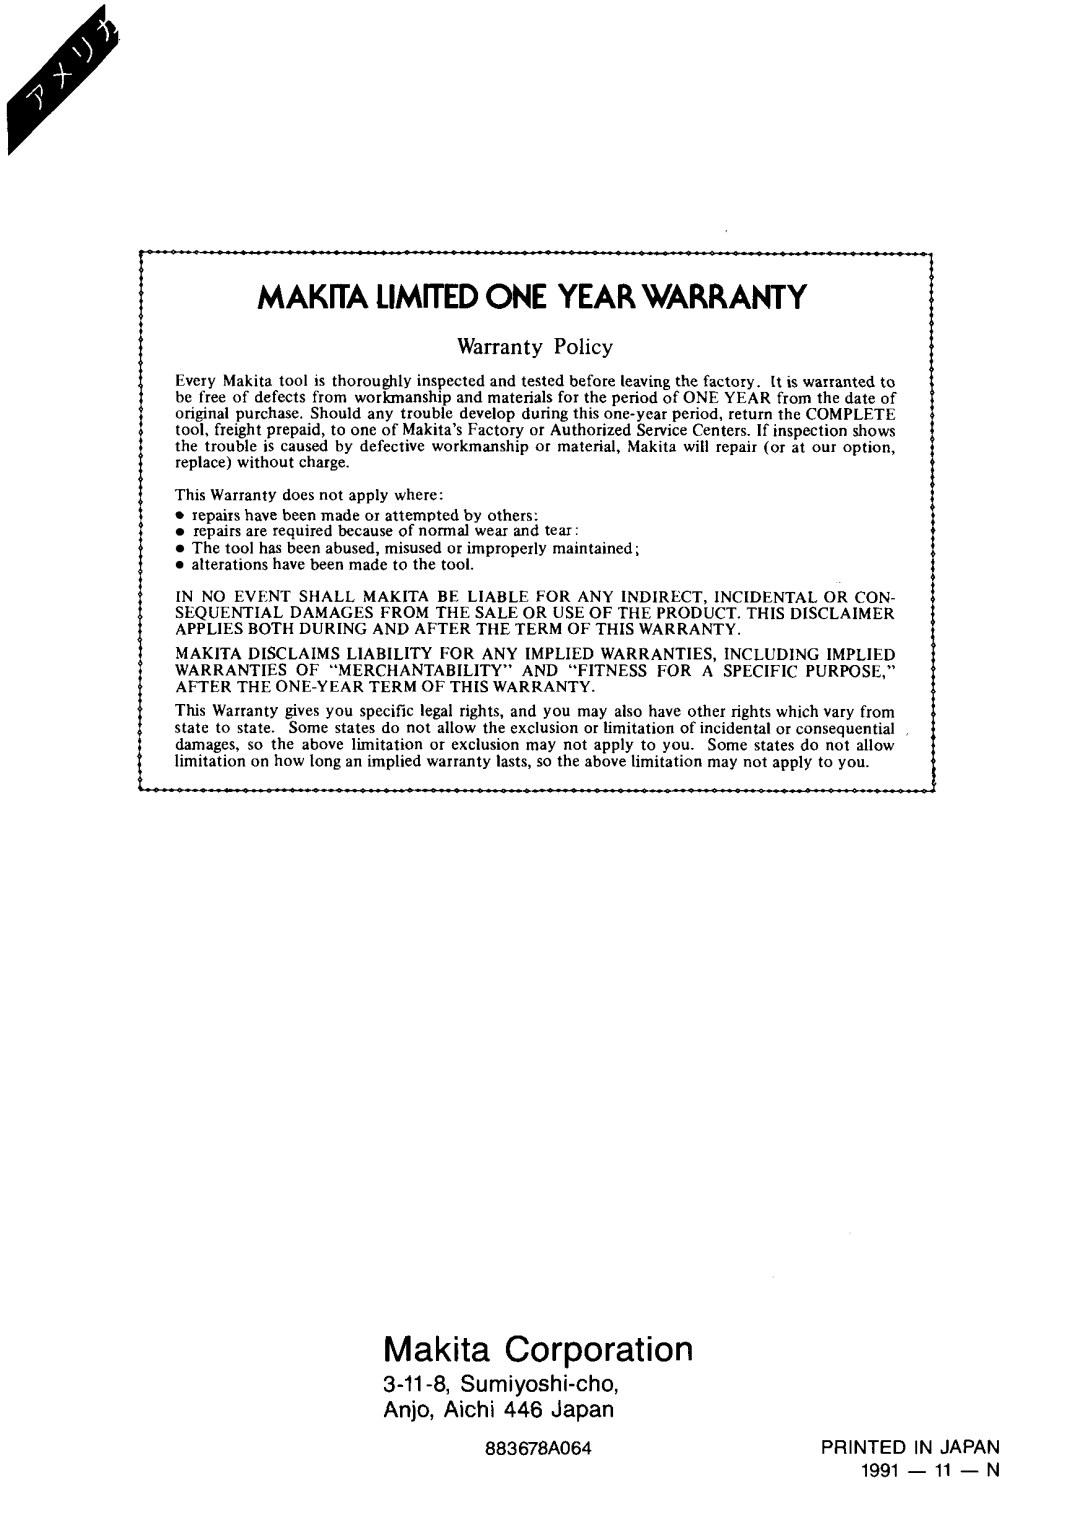 Makita 3702B instruction manual Makita Limitedone Year Warranty, Makita Corporation, Warranty Policy 